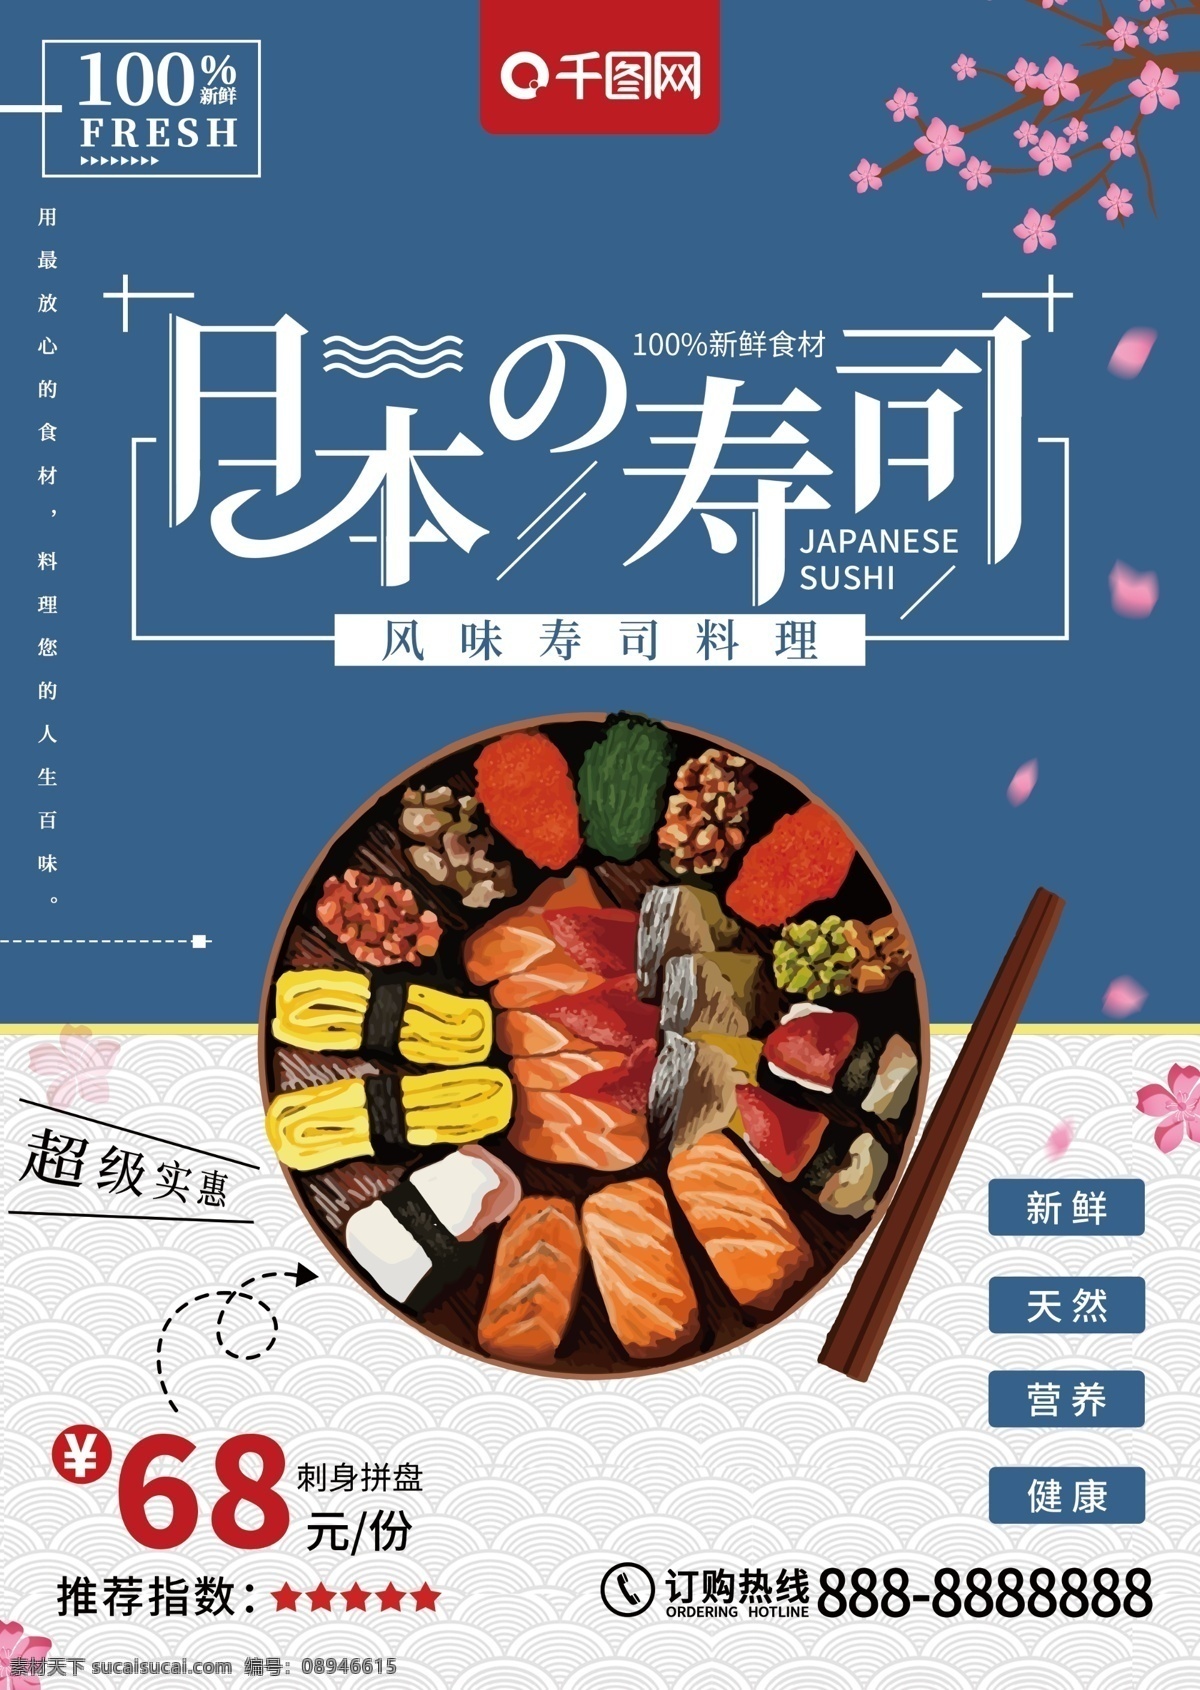 清新 简约 日本 寿司 菜单 宣传单 日本寿司 日本料理 料理 刺身 三文鱼卷 日本美食 美食 日本寿司菜单 美食宣传单 单页宣传单